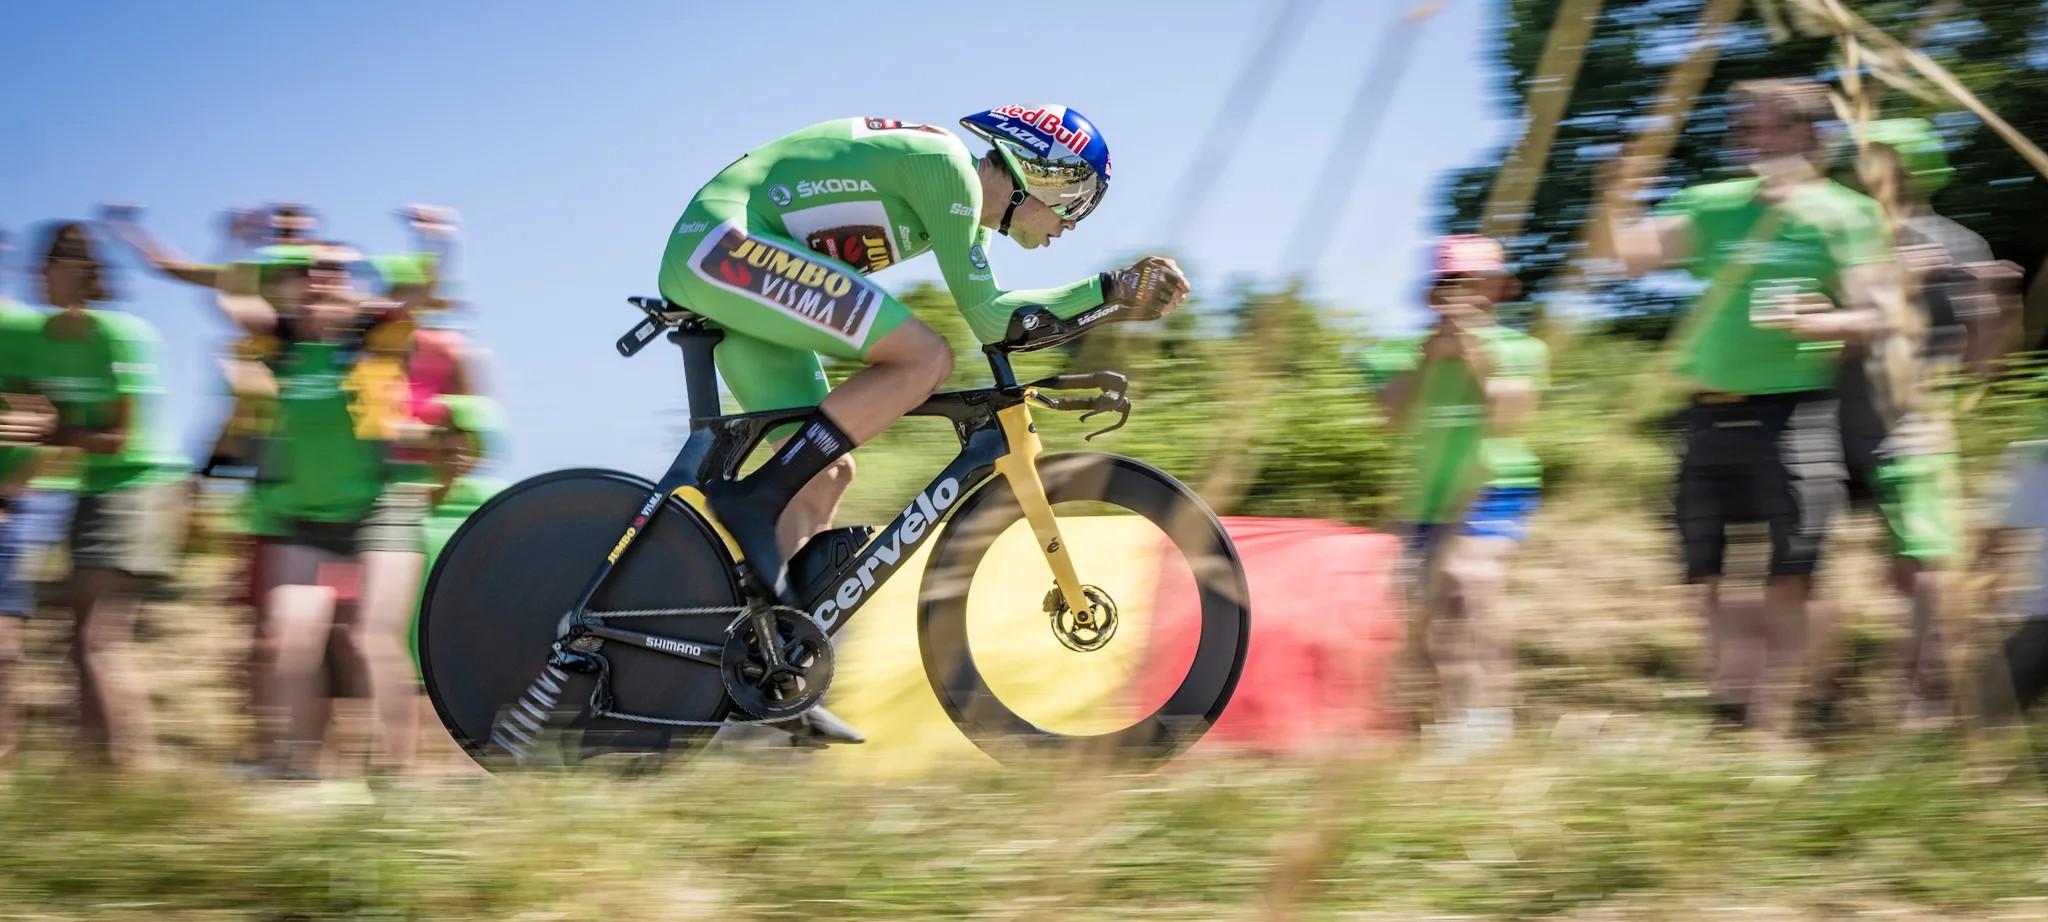 Wout snelt naar de overwinning in de voorlaatste etappe van de Tour de France.